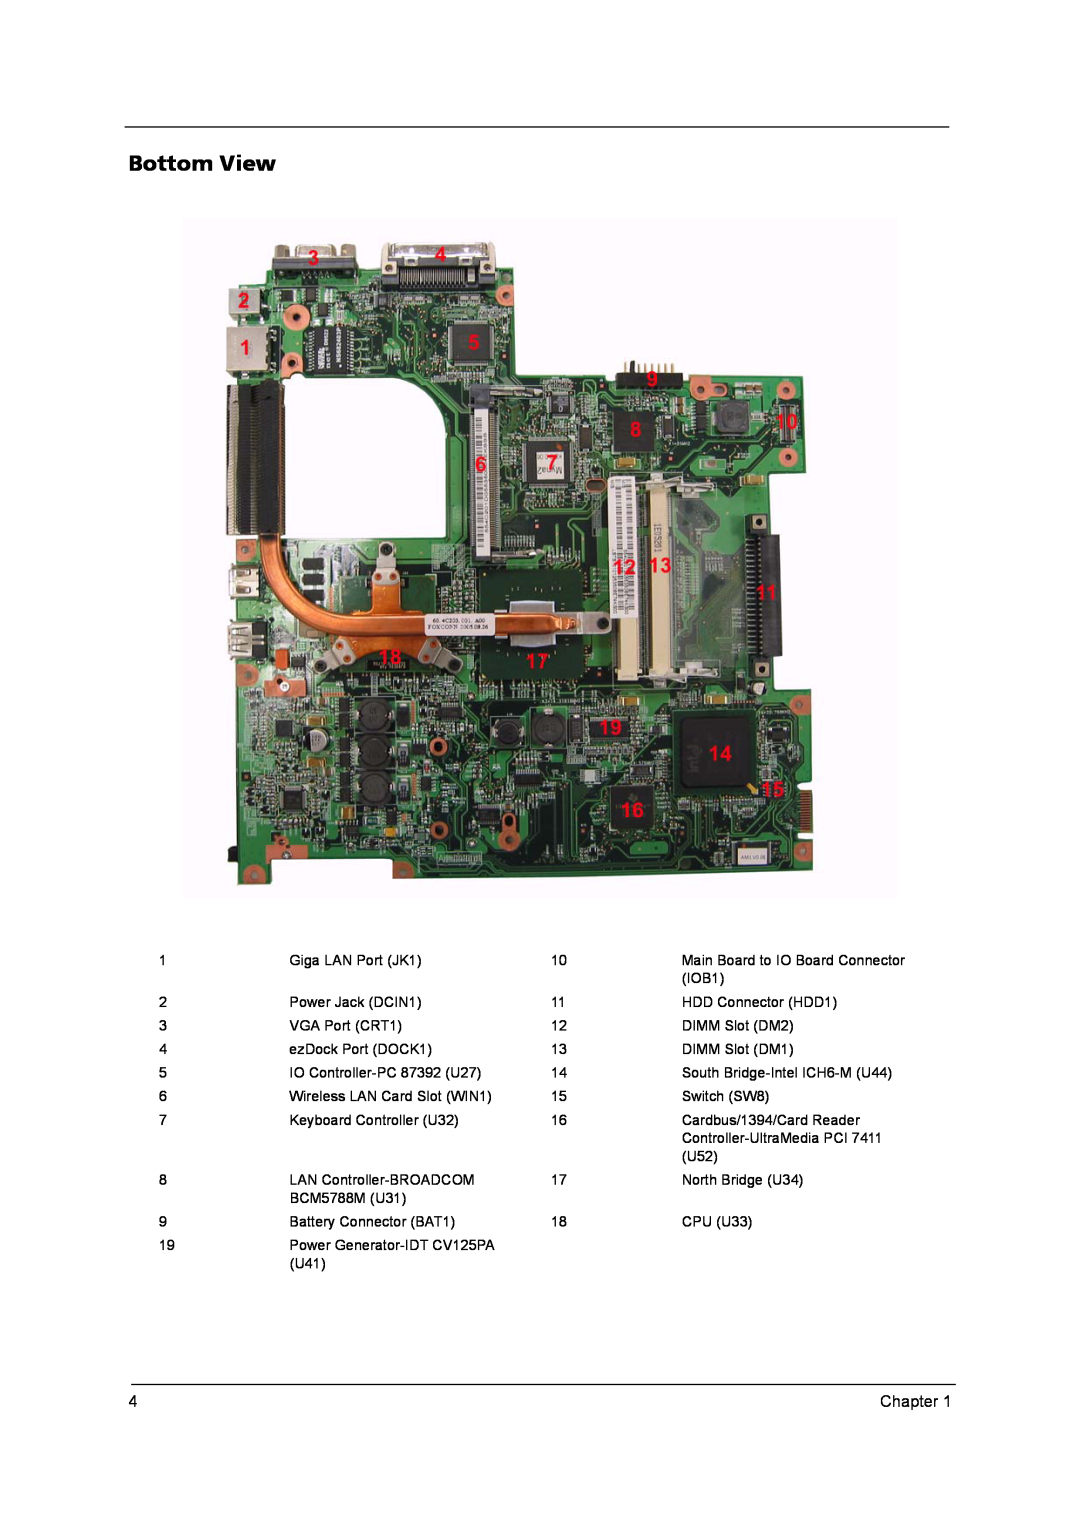 Acer QD14TL0102, PLUTO MK6025GAS, MK4025GAS, N141I1-L05 (GLARE), N141C1-L02 (WXGA+), PLUTO MK8025GAS, HT141WX1-100 Bottom View 